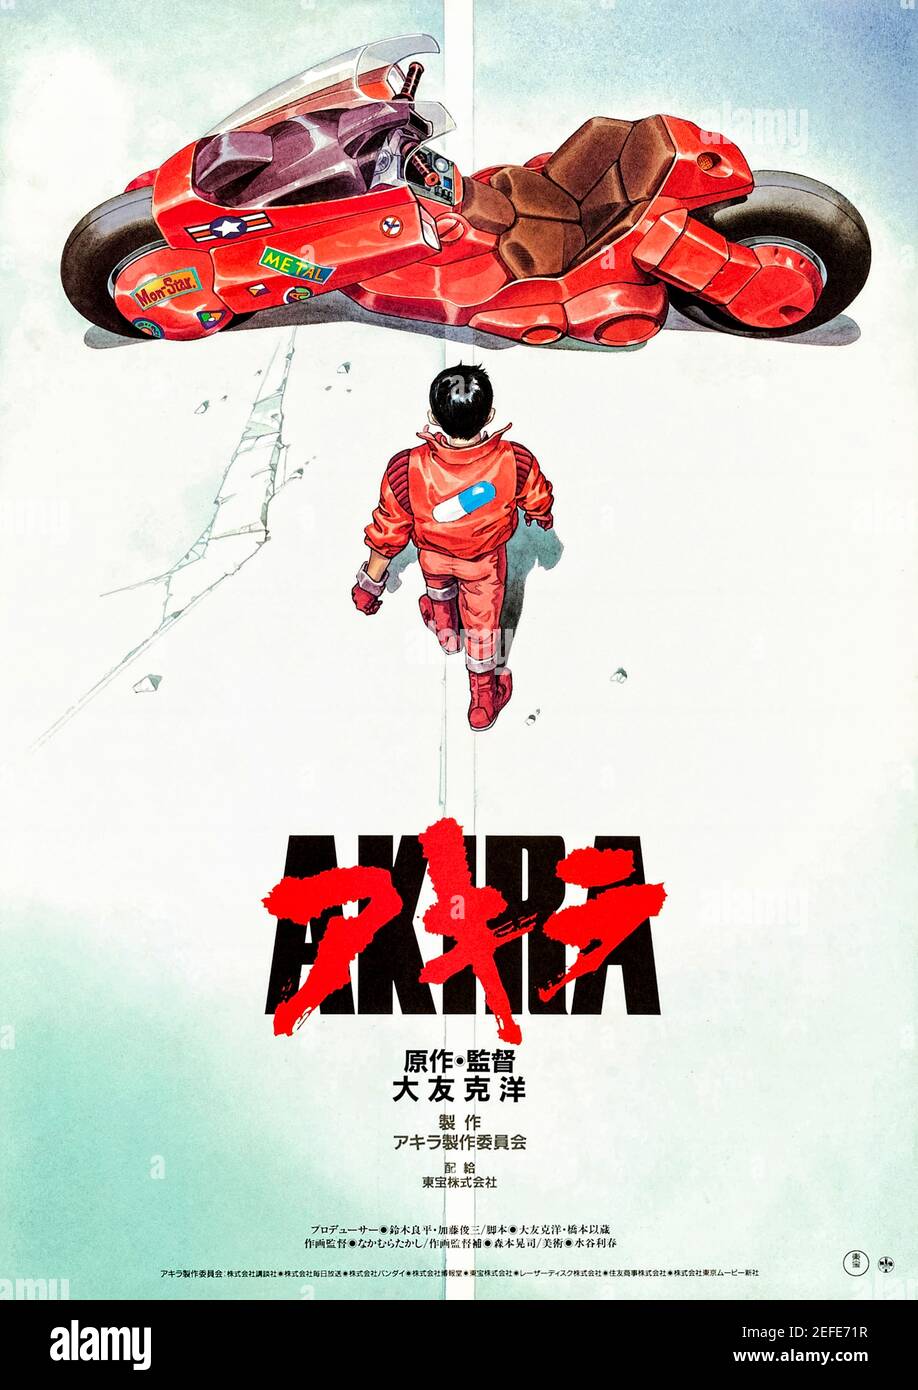 Akira (1988) regia di Katsuhiro Ôtomo e con Mitsuo Iwata, Nozomu Sasaki, Mami Koyama e Tesshô Genda. Uno dei più grandi film di anime di tutti i tempi, basato su una serie di manga su un biker che sviluppa abilità telekinetic così potenti che possono distruggere Neo-Tokyo. Foto Stock